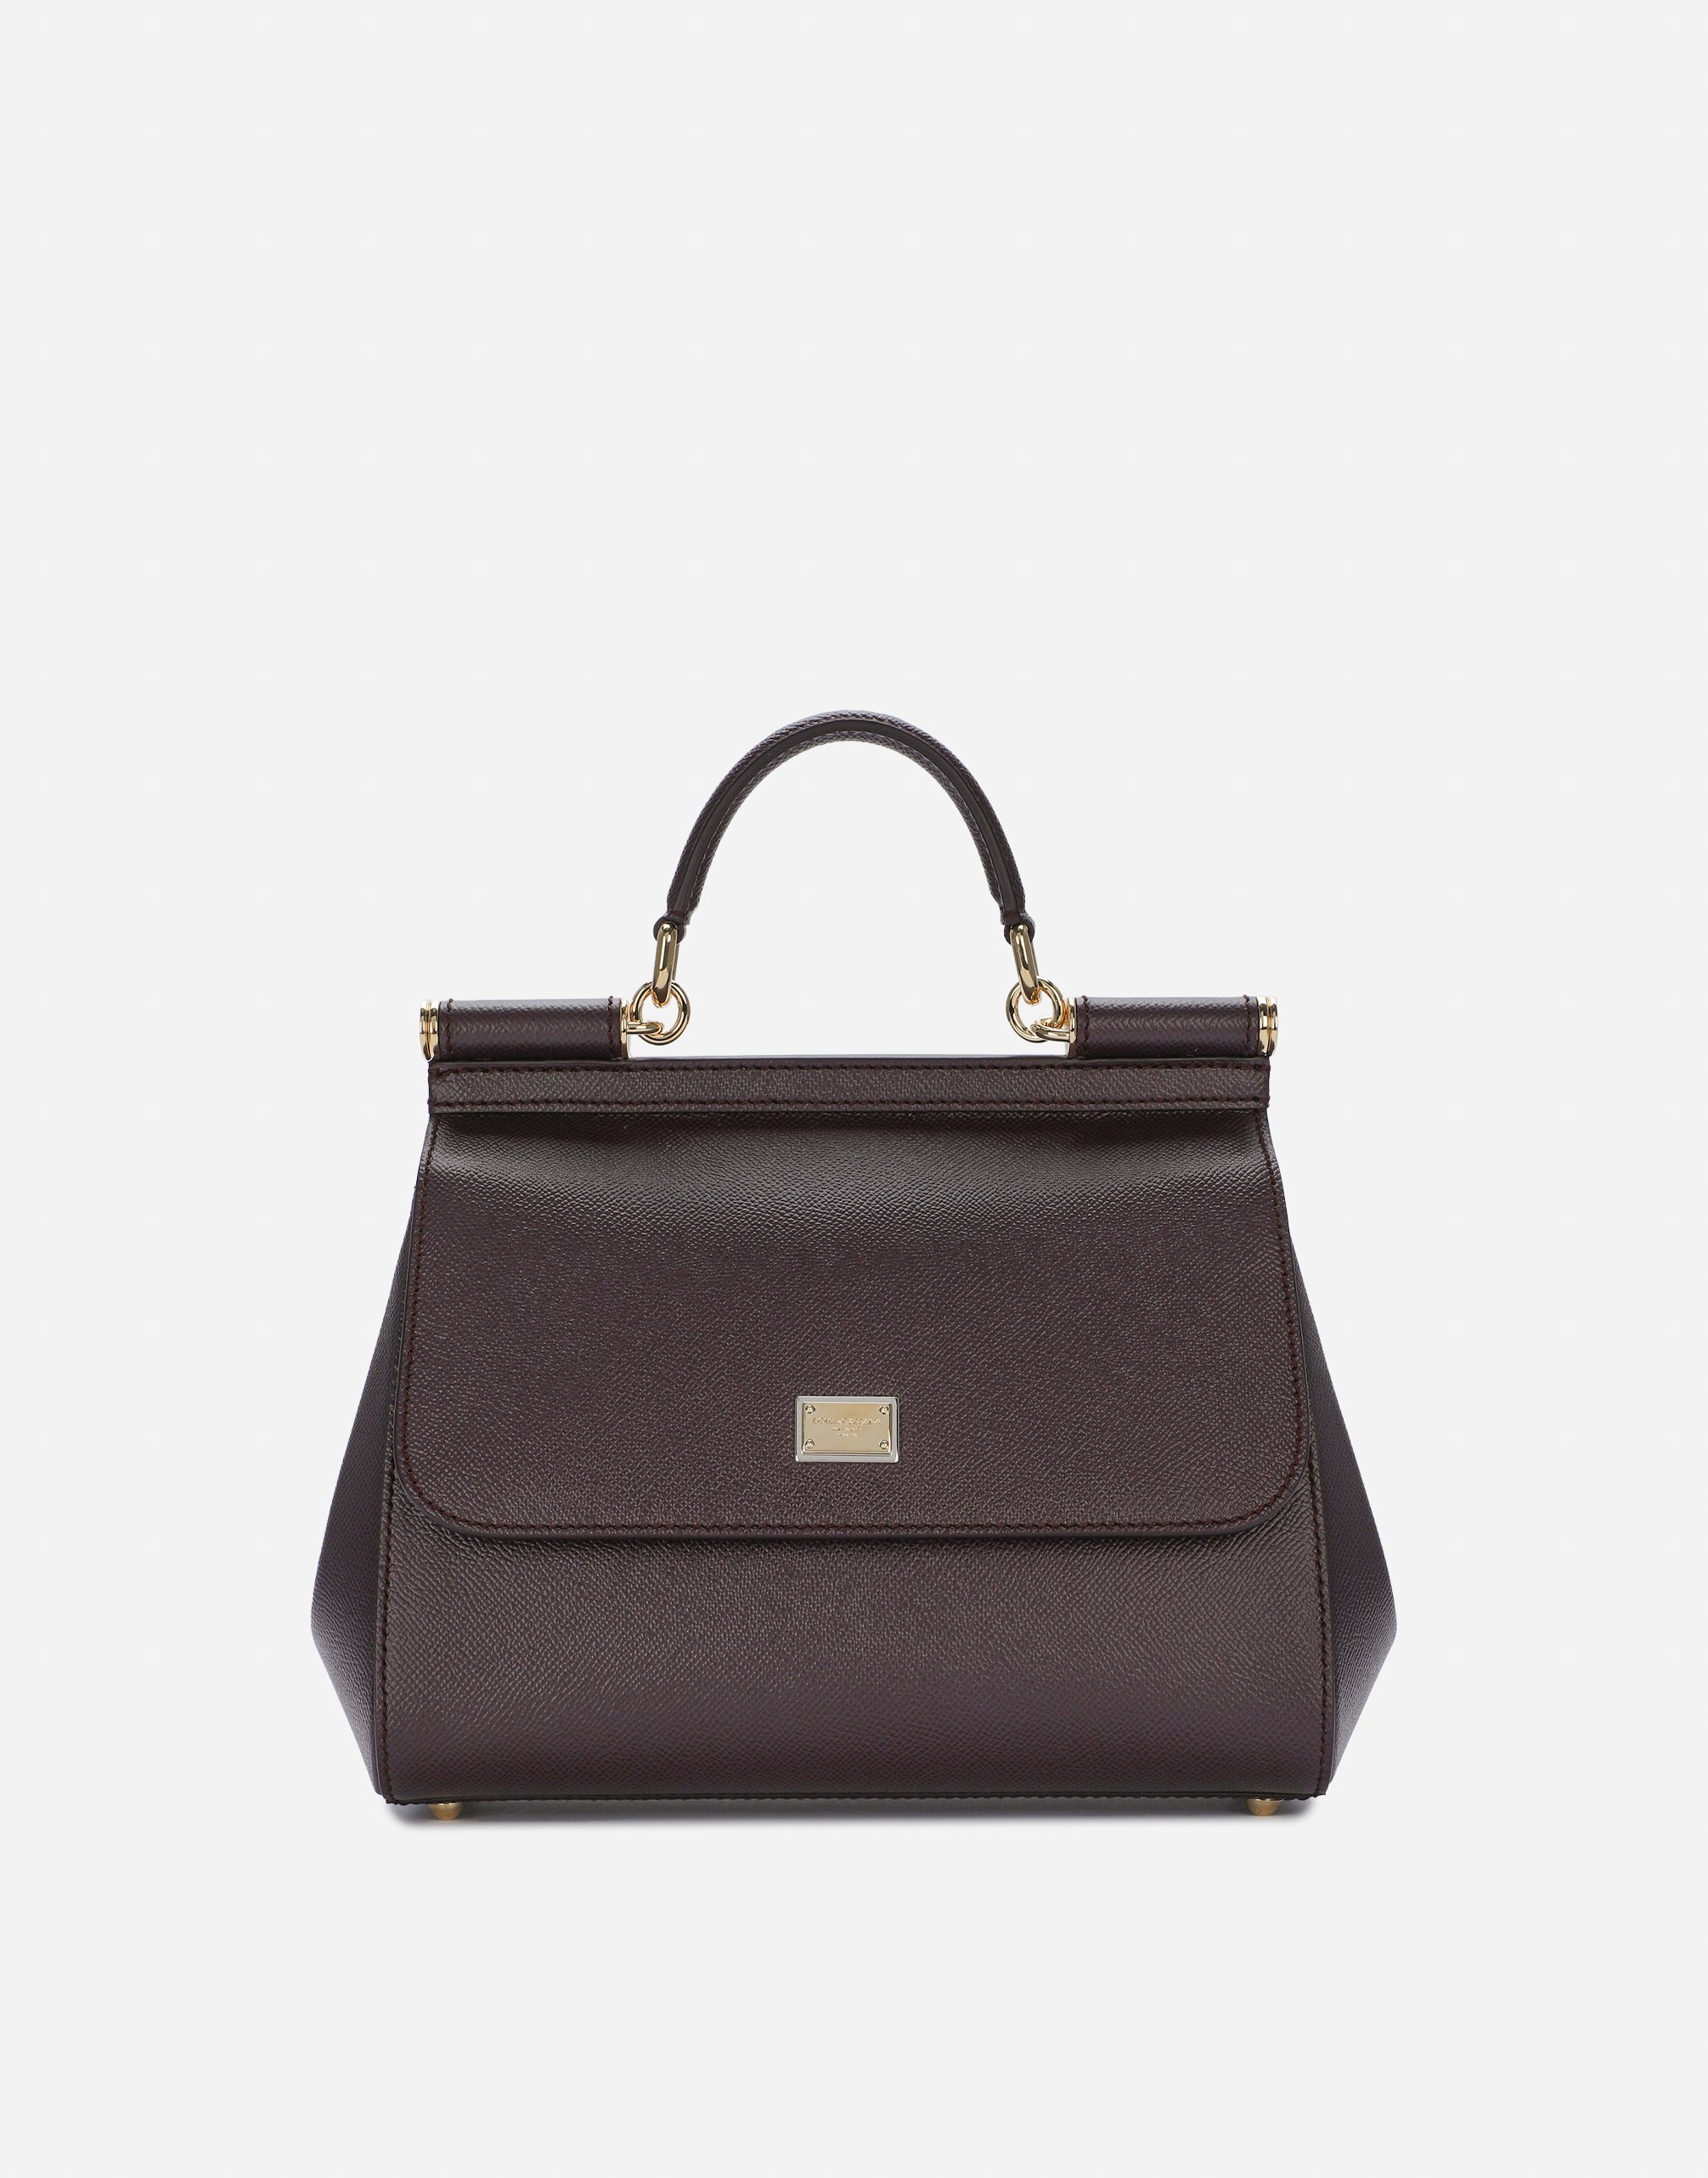 Medium Sicily handbag in dauphine leather in Purple